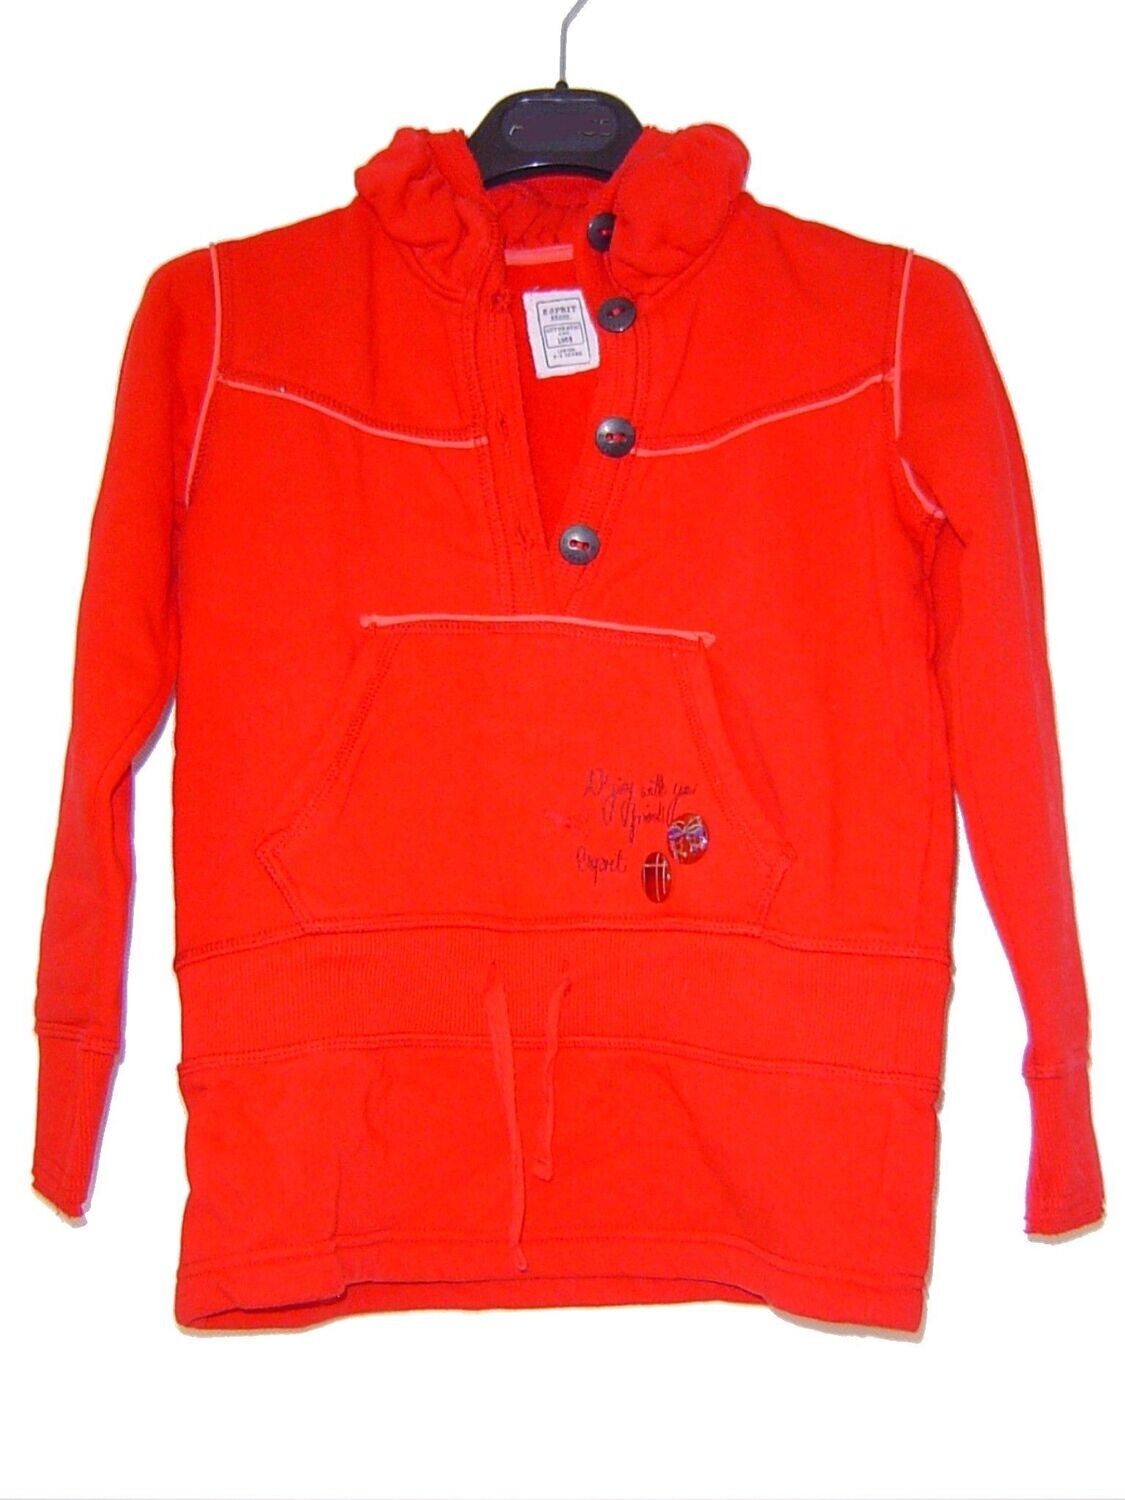 Esprit Mädchen Sweatshirt Gr. 128, 134 rot Langarm